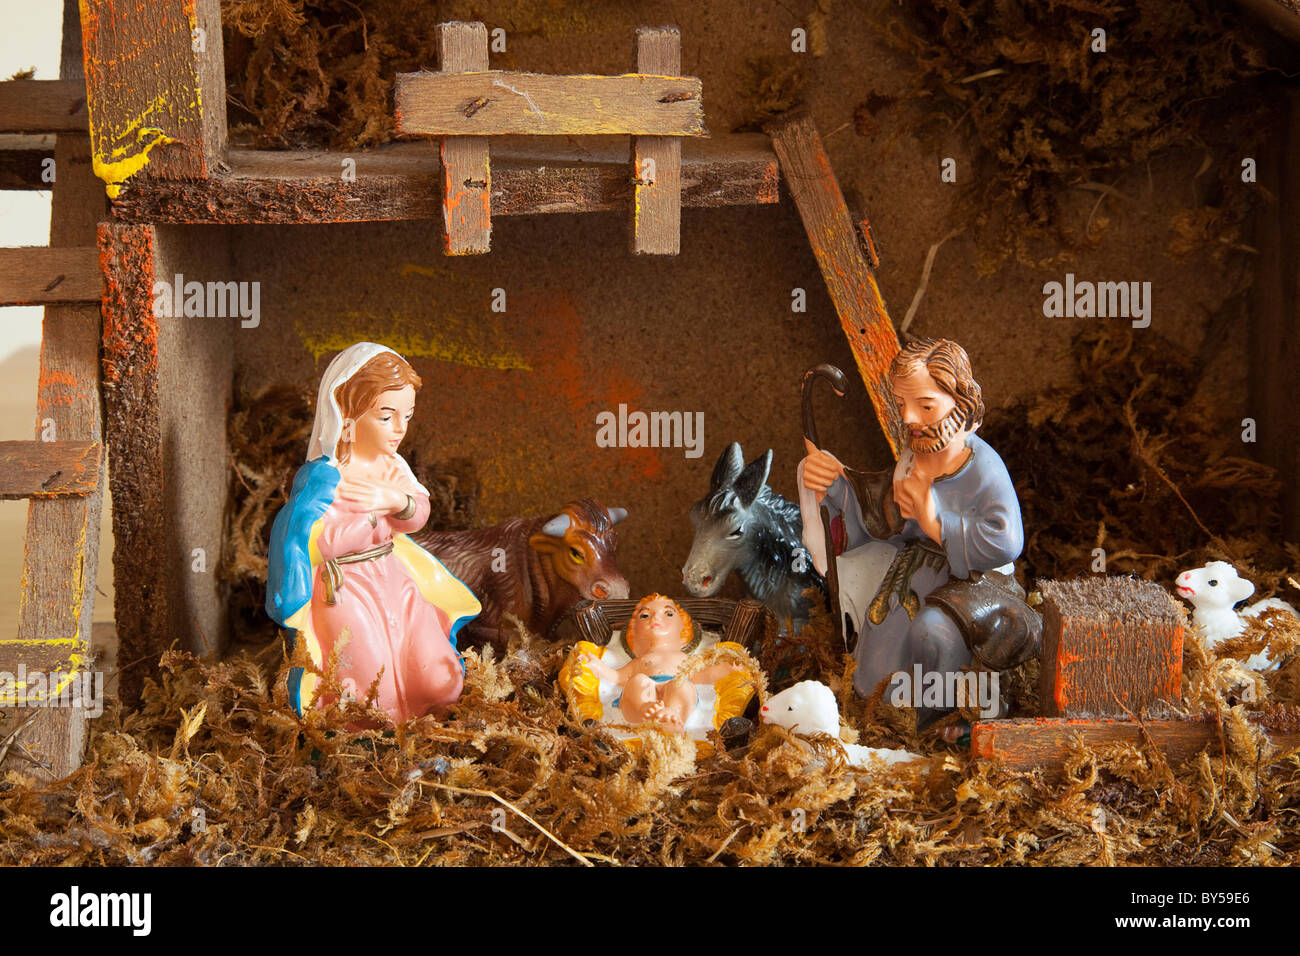 Immagini Natale Religiose.Feste Di Natale Religiose Nativita Presepe Con Piccole Figure Di Plastica Foto Stock Alamy